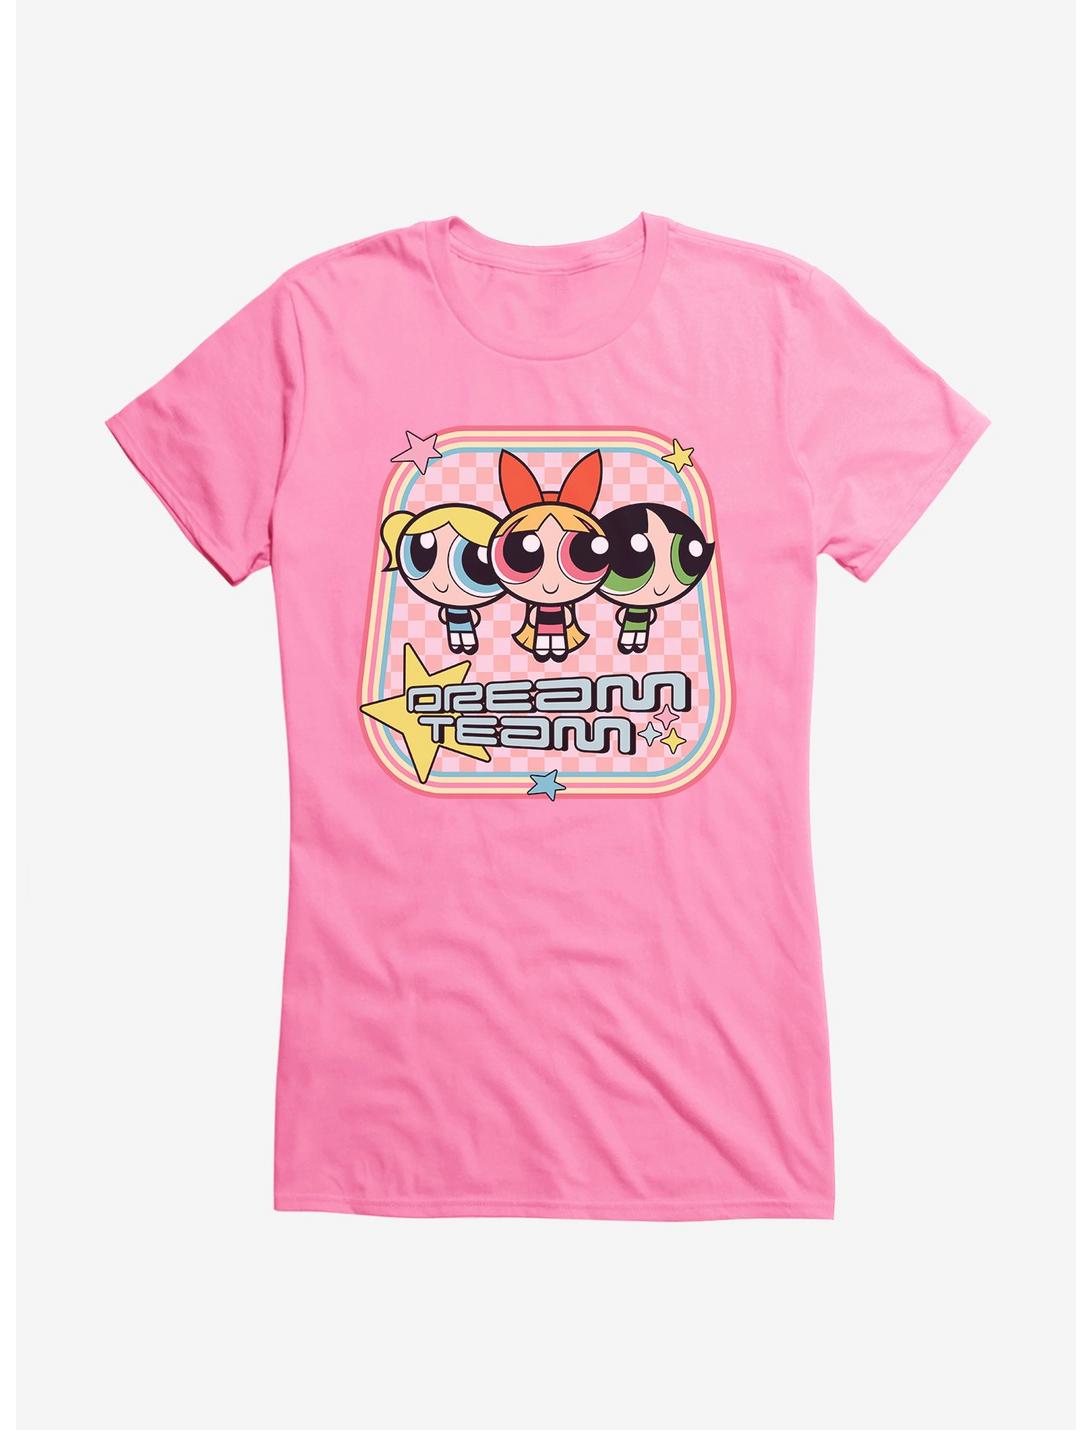 Powerpuff Girls Dream Team Girls T-Shirt, , hi-res